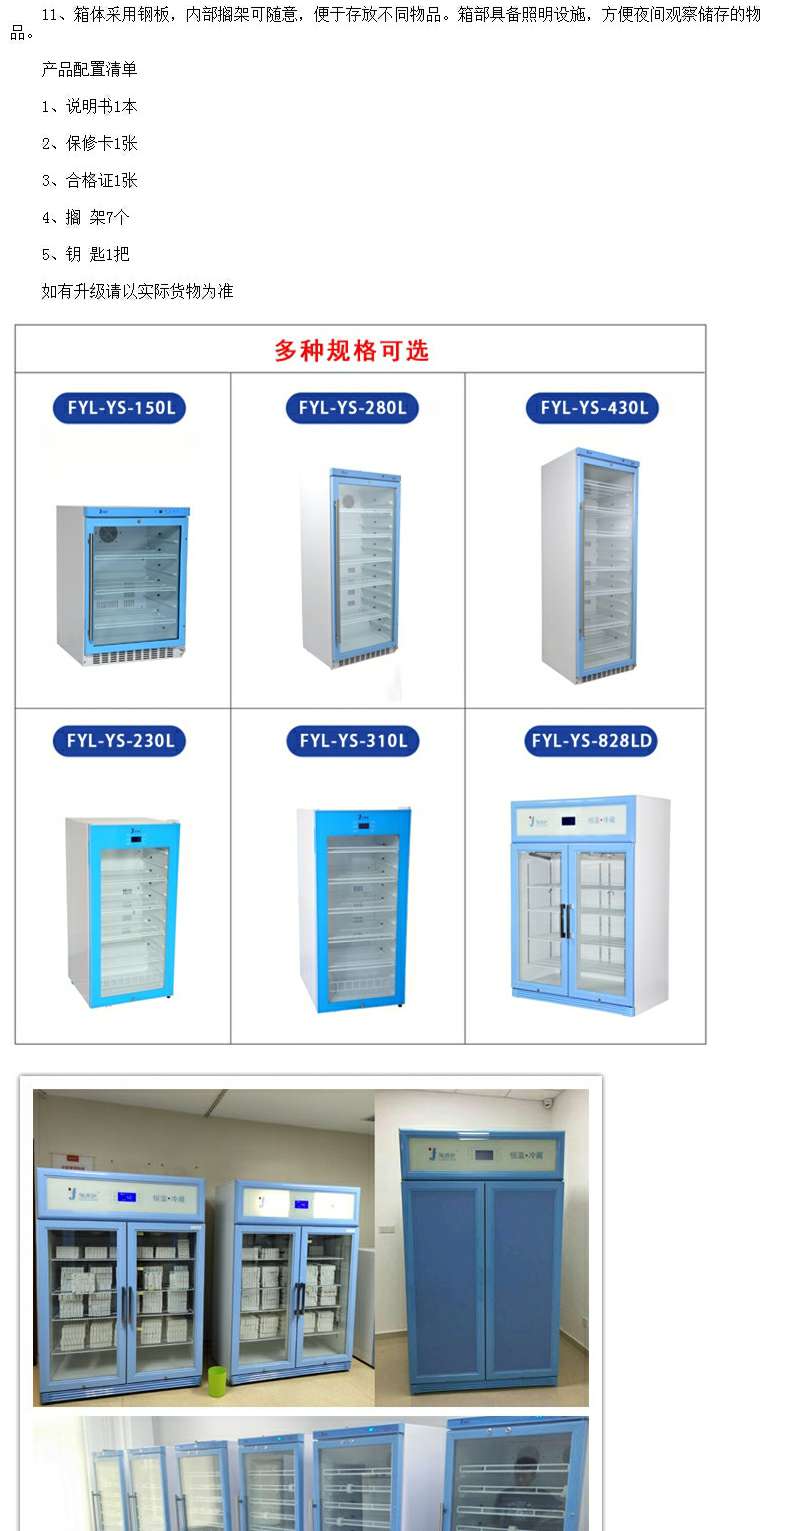 20-30度药品存储柜/药品恒温箱/恒温药品柜